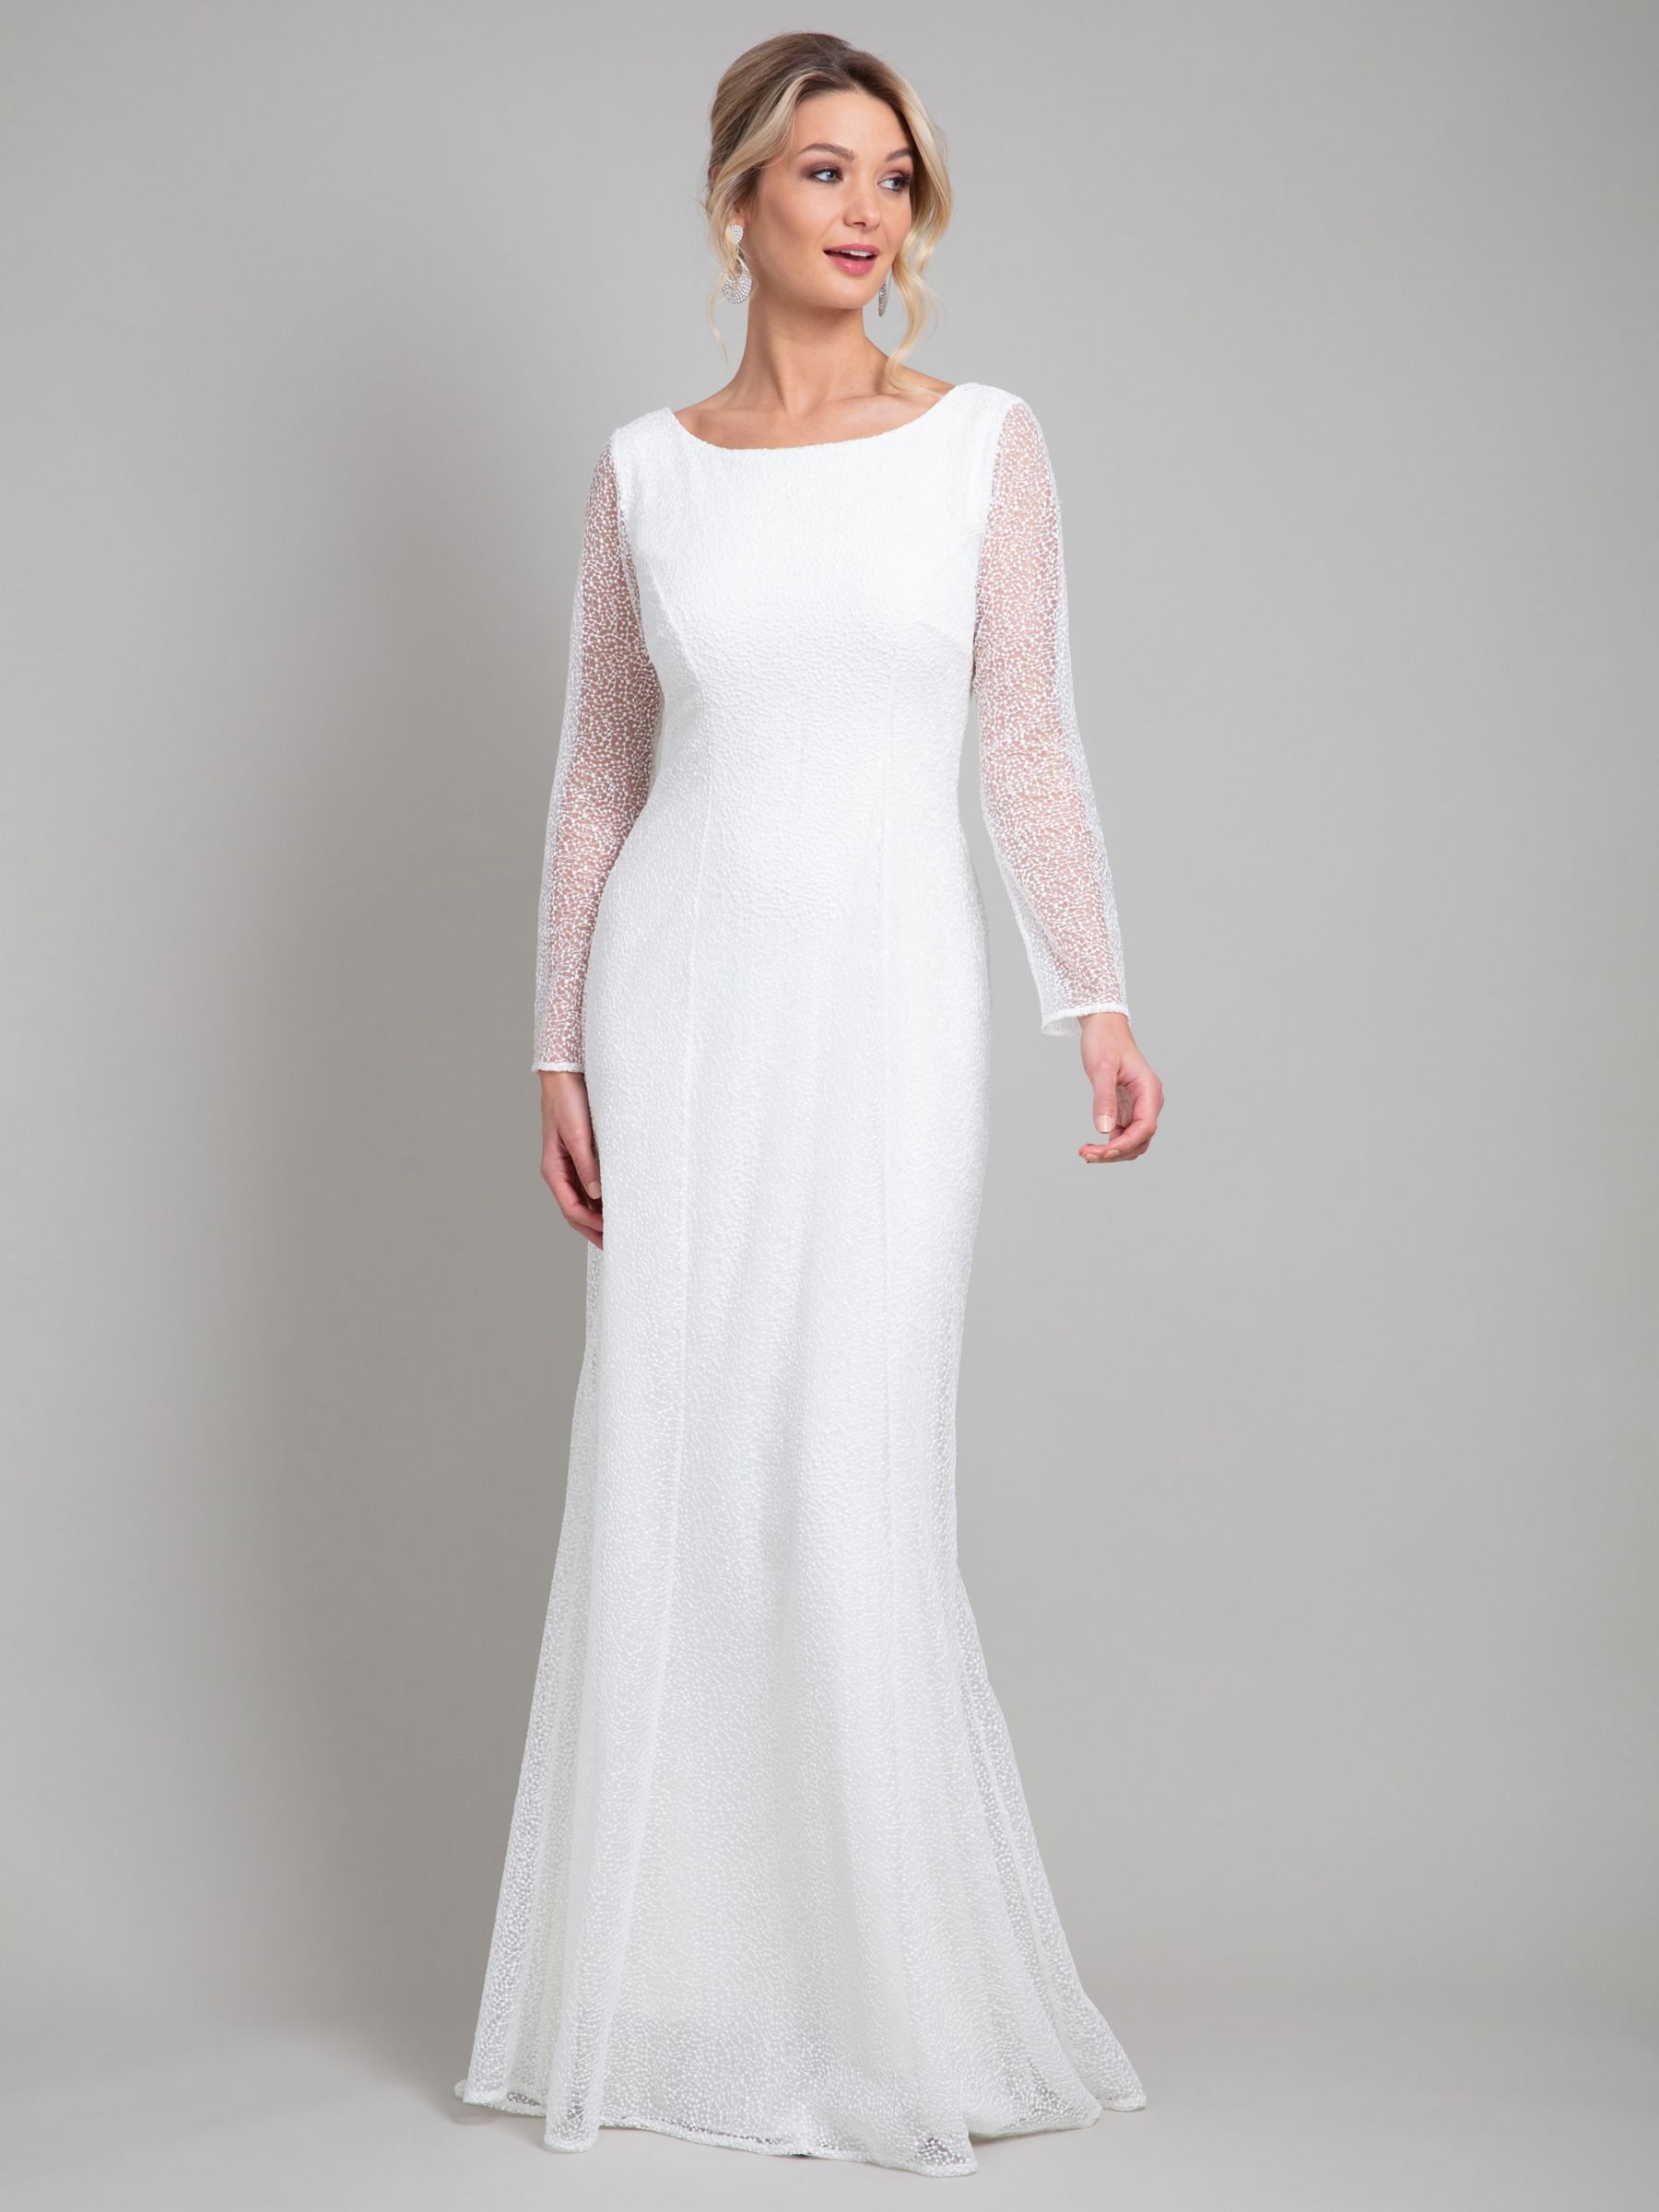 Alie Street Iris Sparkle Wedding Gown, White at John Lewis & Partners